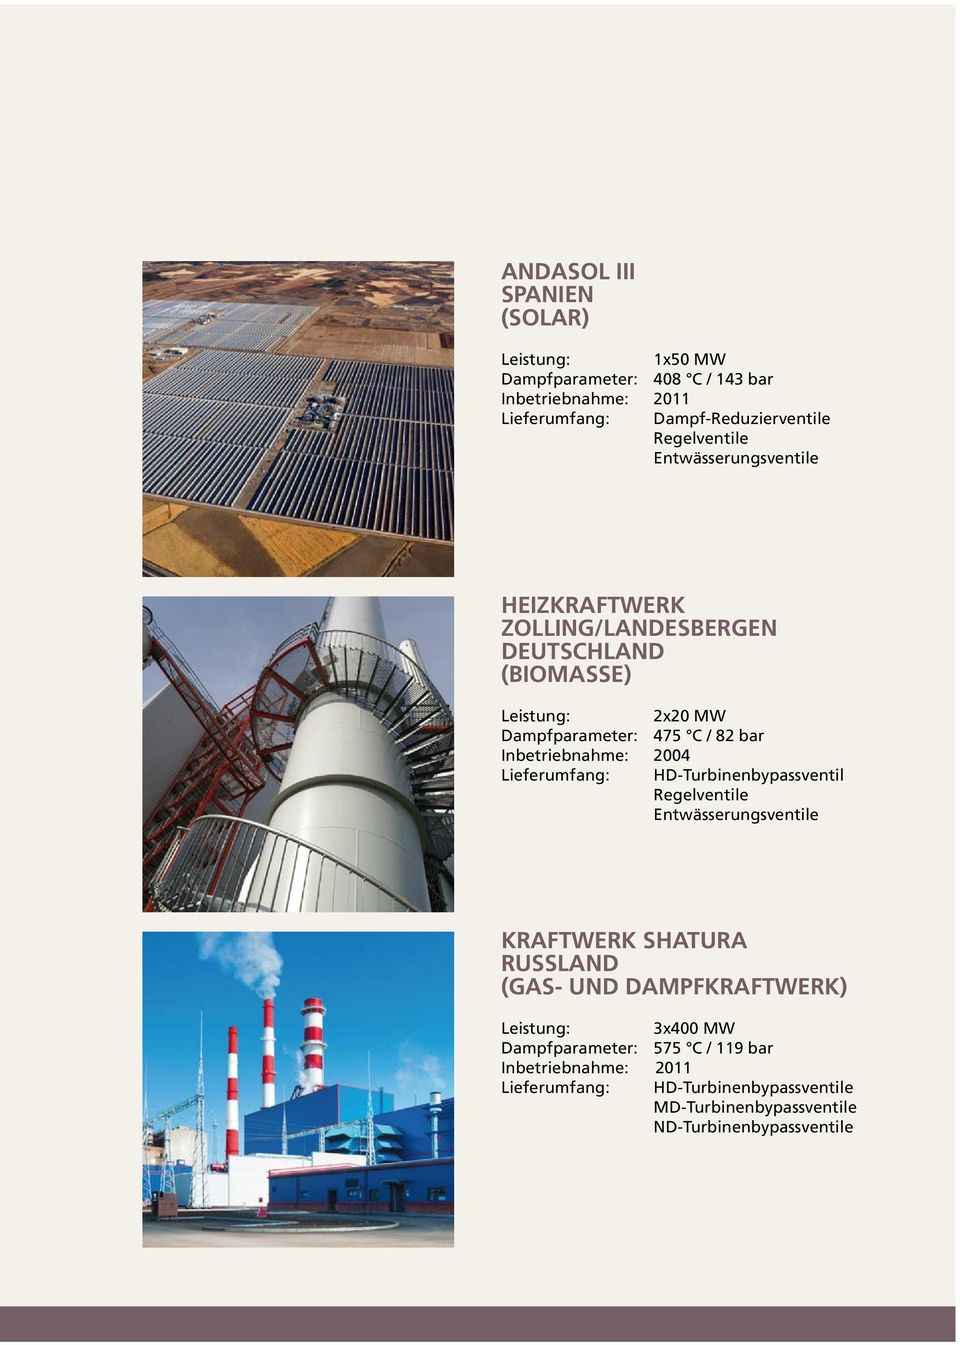 Inbetriebnahme: 2004 Lieferumfang: HD-Turbinenbypassventil Regelventile Entwässerungsventile KRAFTWERK SHATURA RUSSLAND (GAS- UND DAMPFKRAFTWERK)